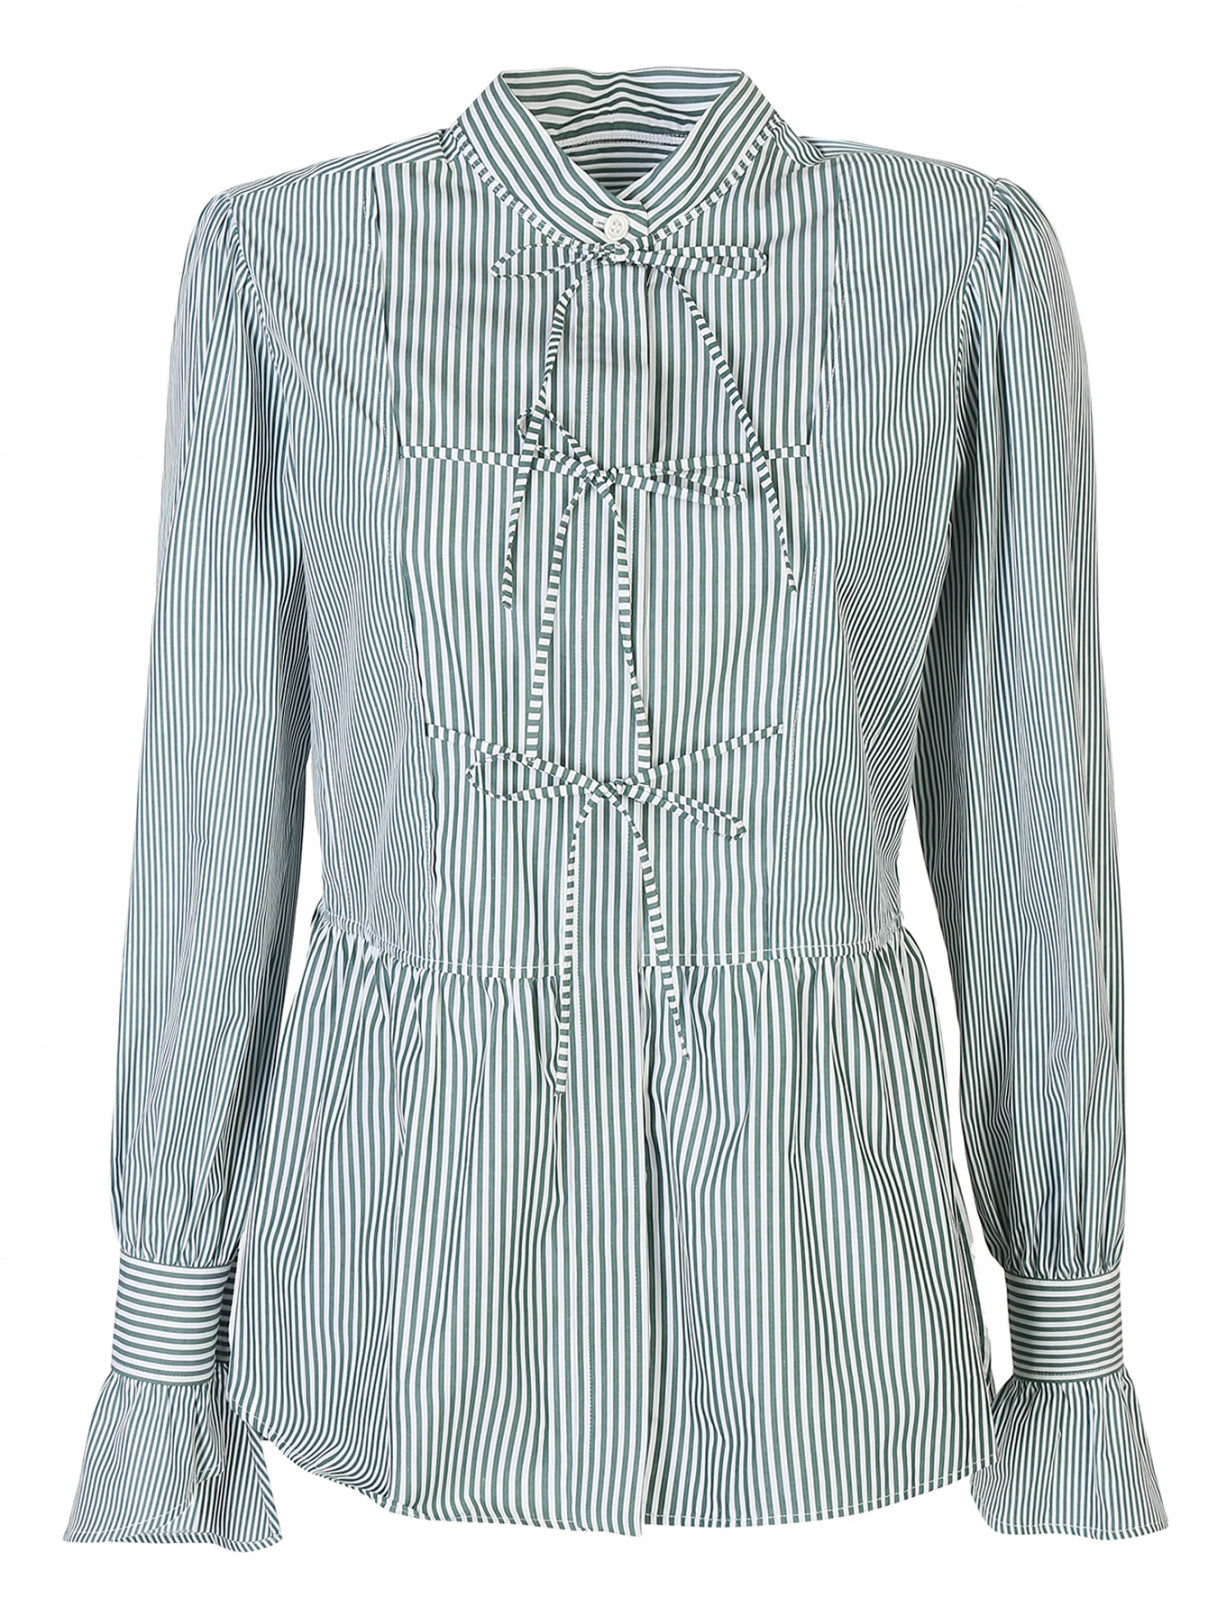 Блуза из хлопка, с узором полоска Alexachung  –  Общий вид  – Цвет:  Белый